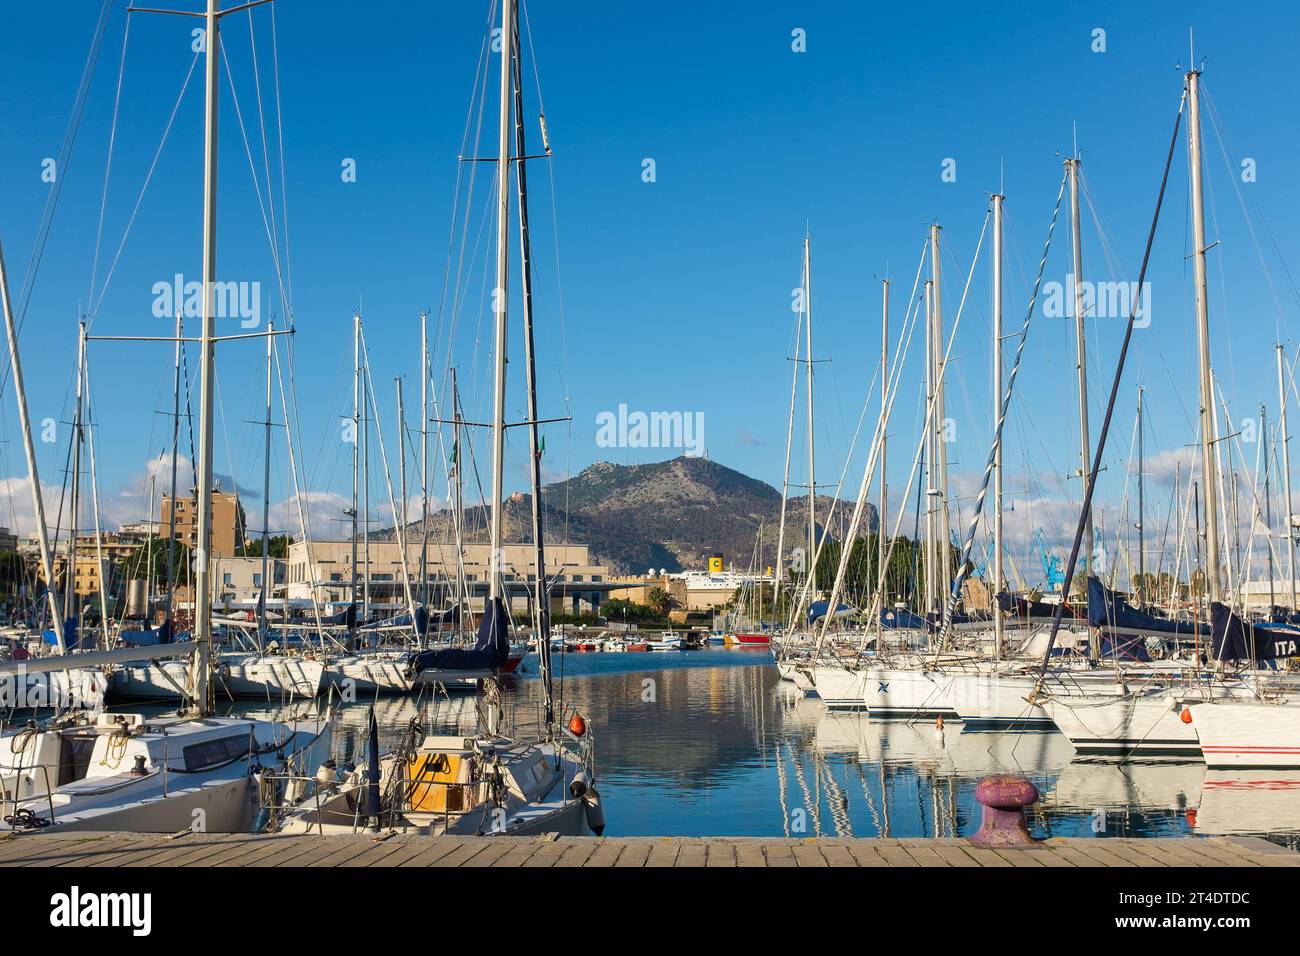 Palerme, Sicile, 2016. Bateaux amarrés à la Cala dans le port de Palerme, avec le mont Pellegrino en arrière-plan Banque D'Images